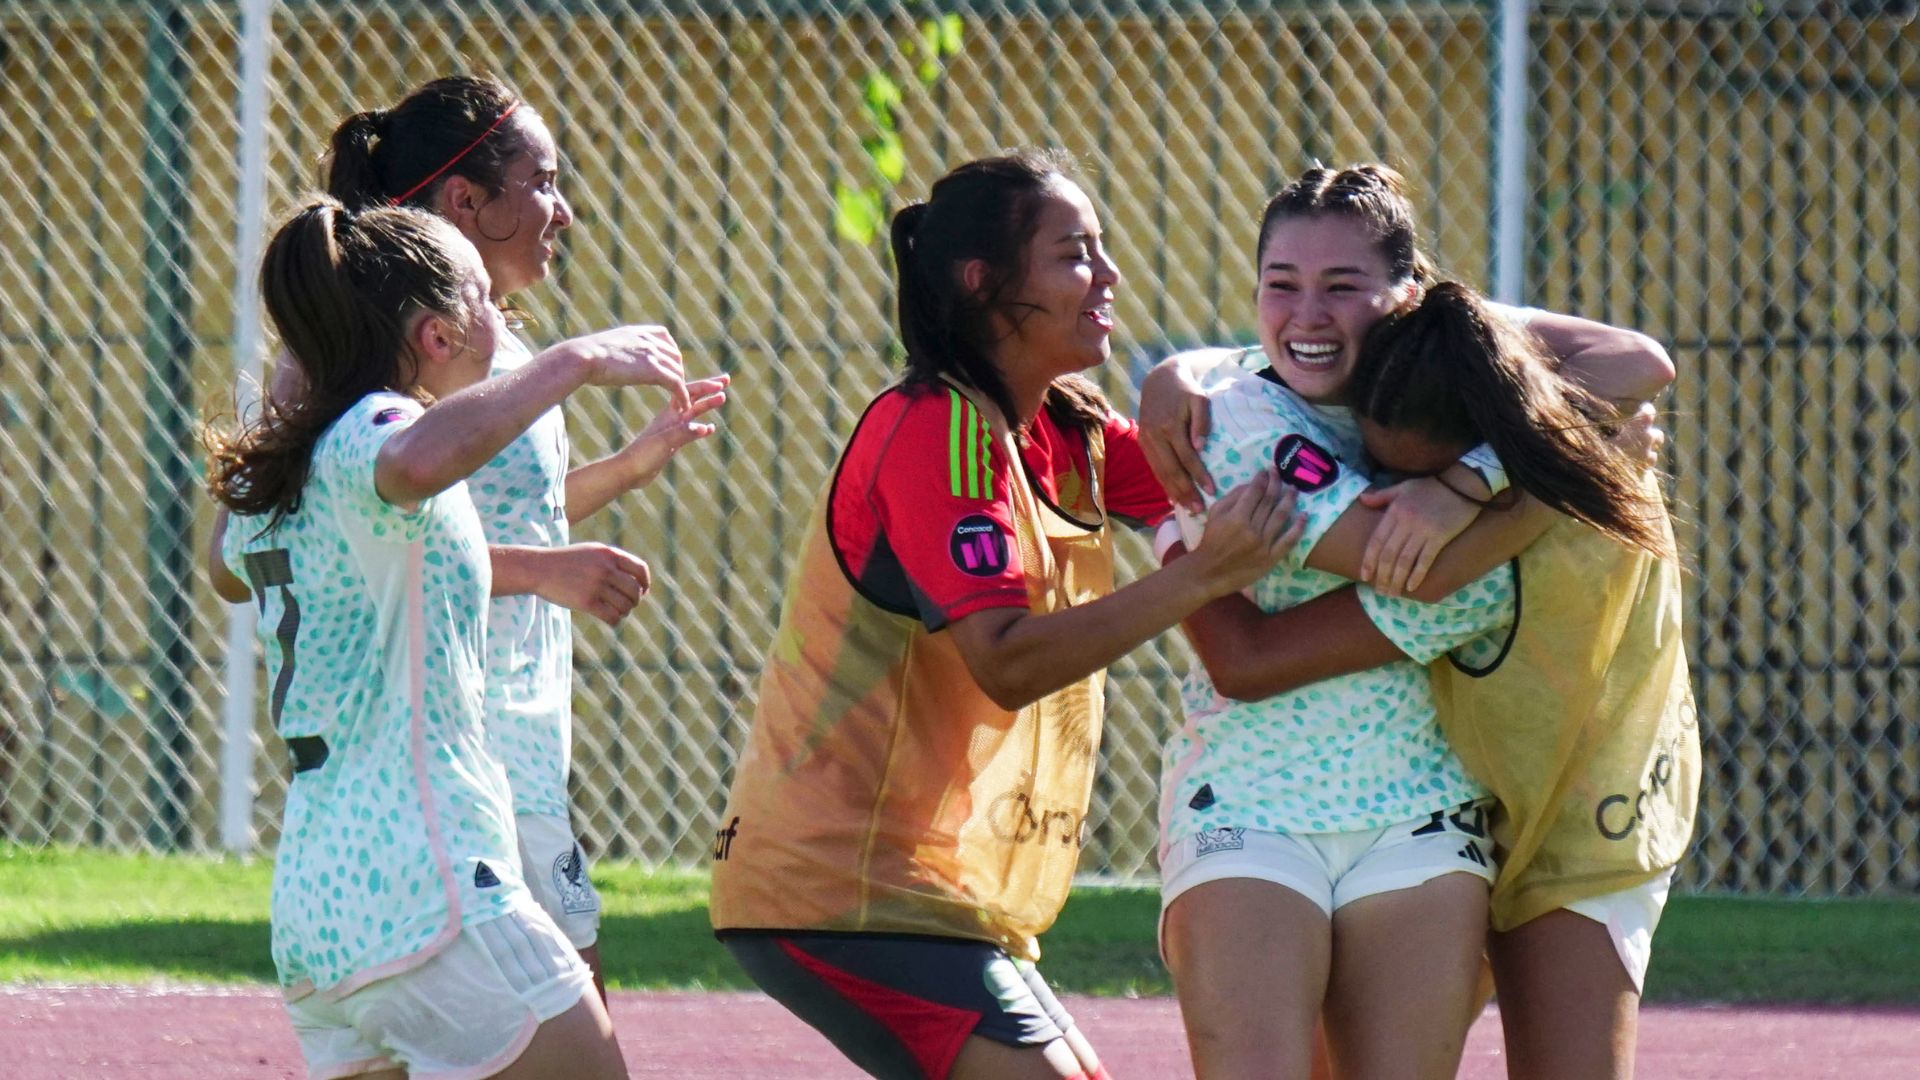 Selección Mexicana sub-20 ganó el Premundial Femenil de Concacaf